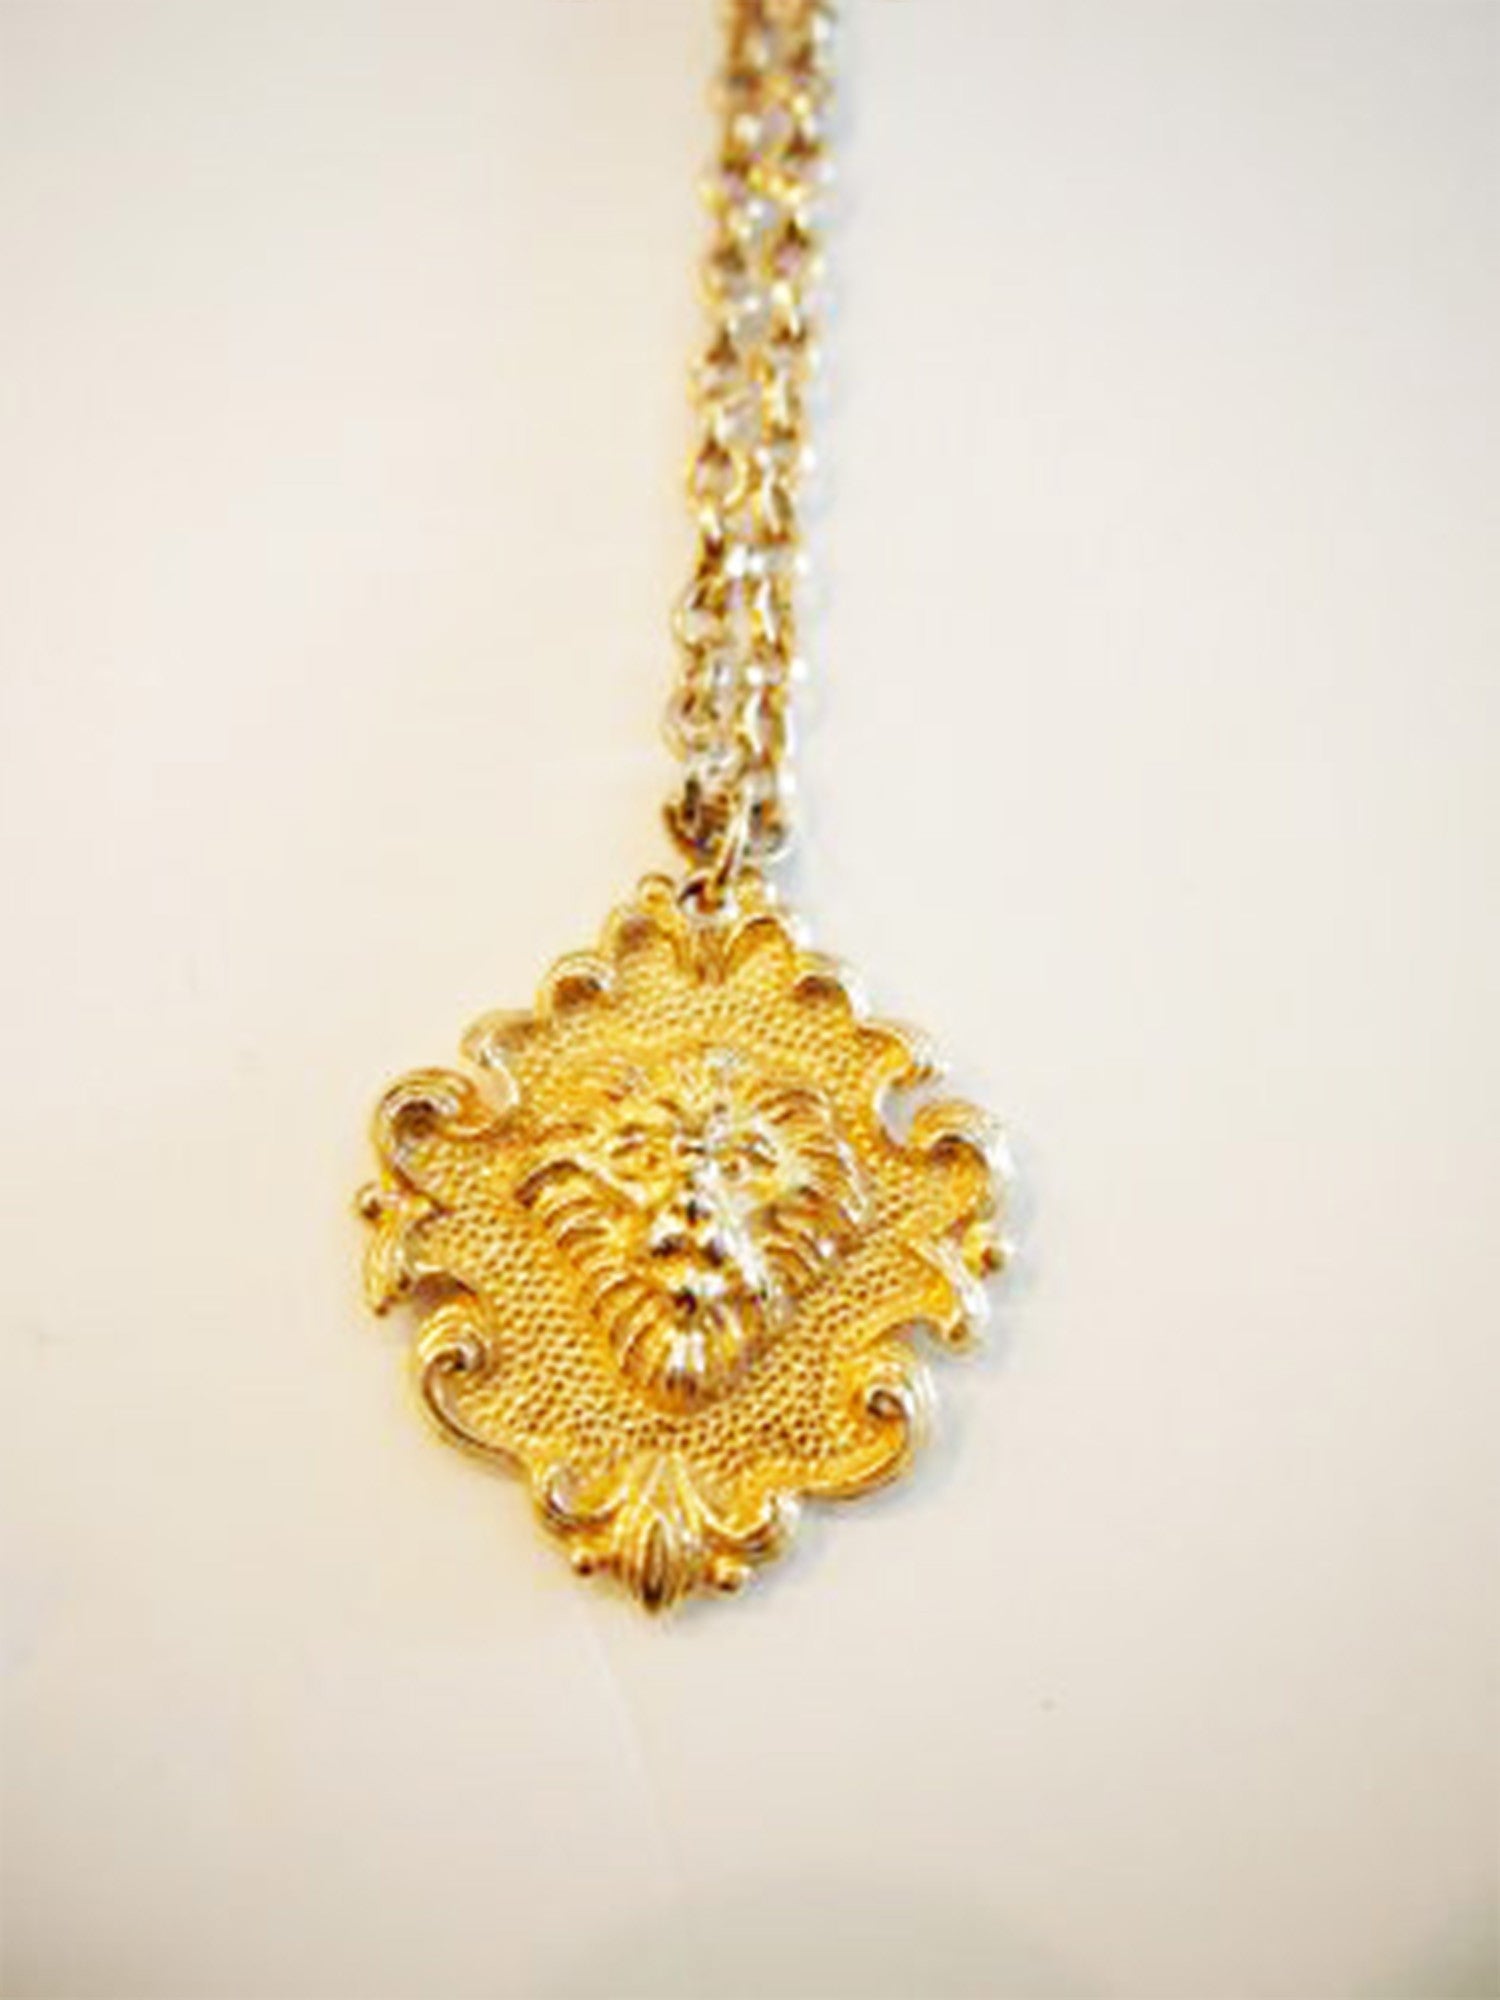 The Lion's Mane Event Vintage Necklace